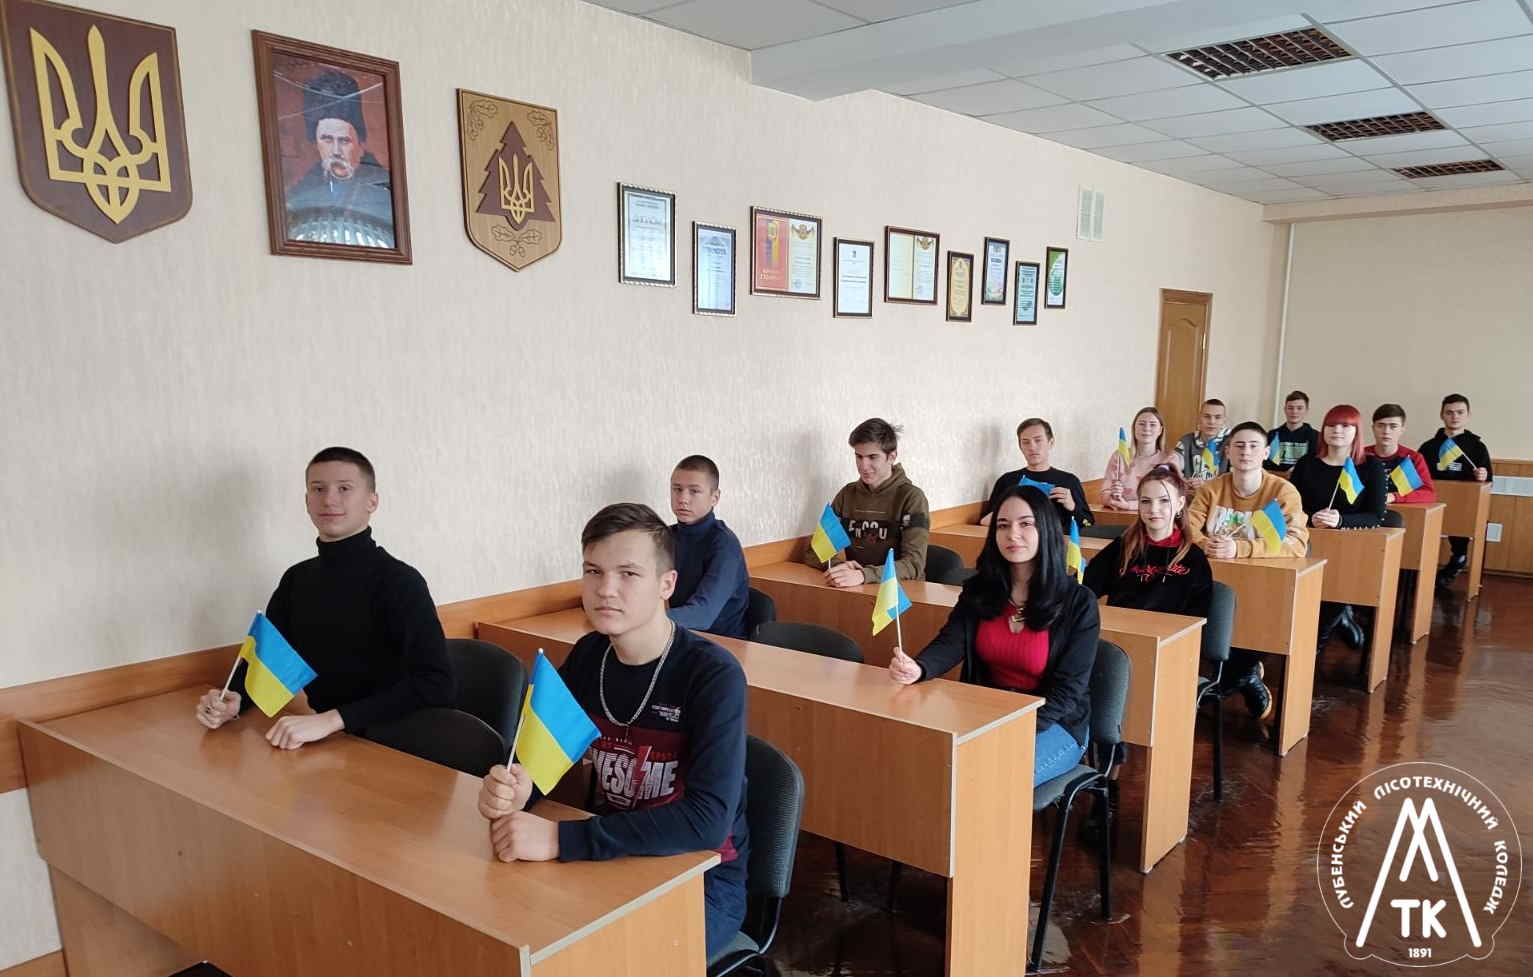 21 січня у коледжі викладачами та студентами були проведені короткі інформаційні заходи з нагоди Дня Соборності України